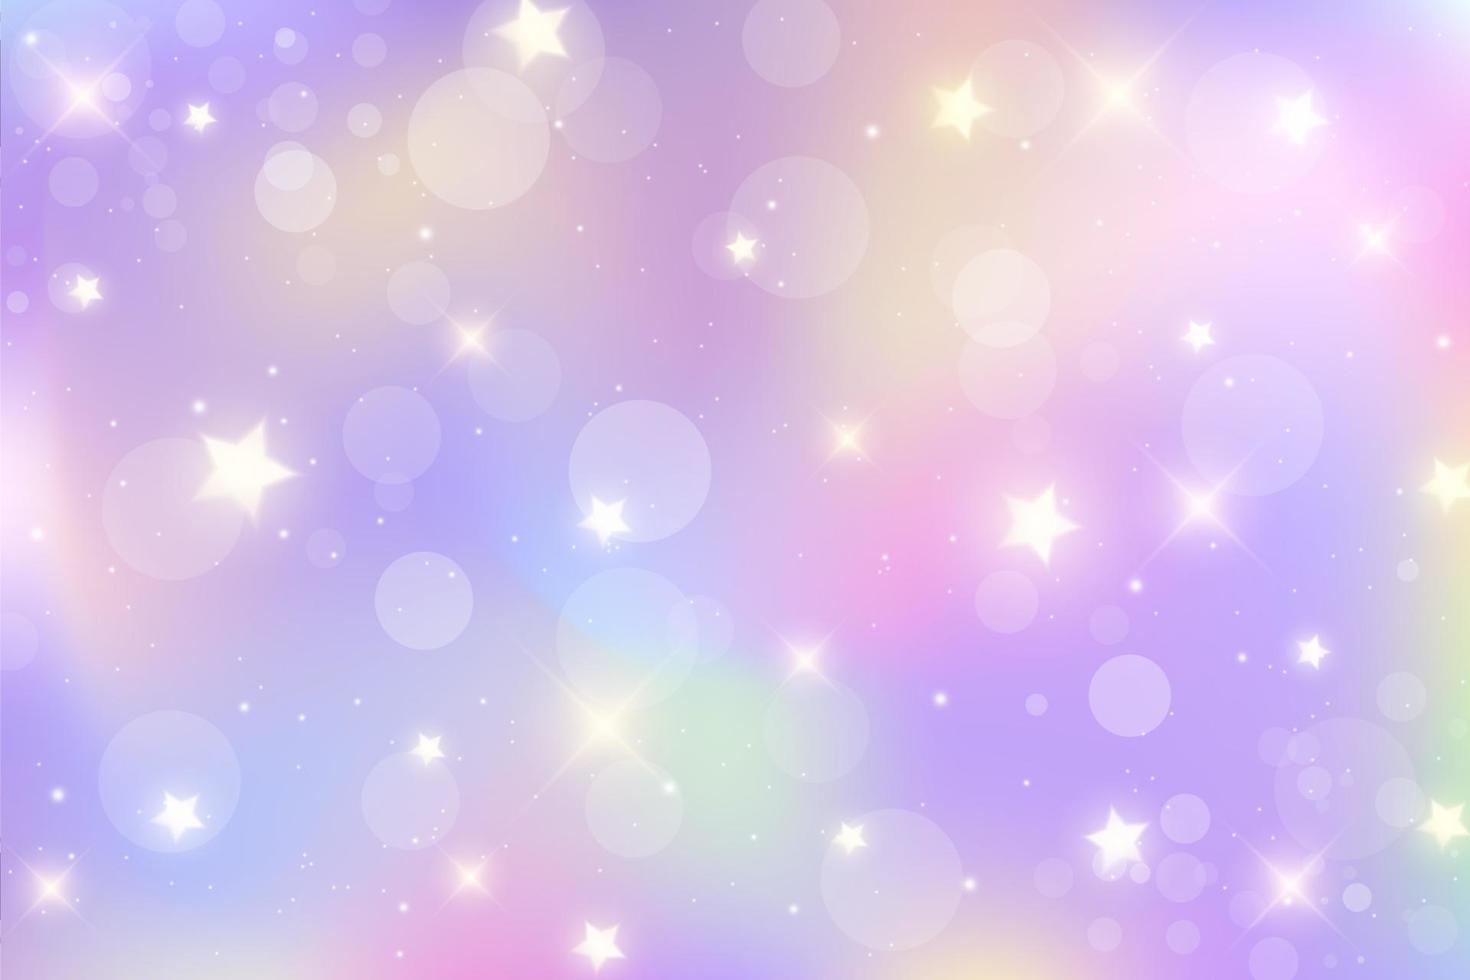 regenboog fantasie achtergrond. heldere veelkleurige hemel met sterren en bokeh. holografische illustratie in pastel violette en roze kleuren. leuke cartoon girly behang. vector. vector